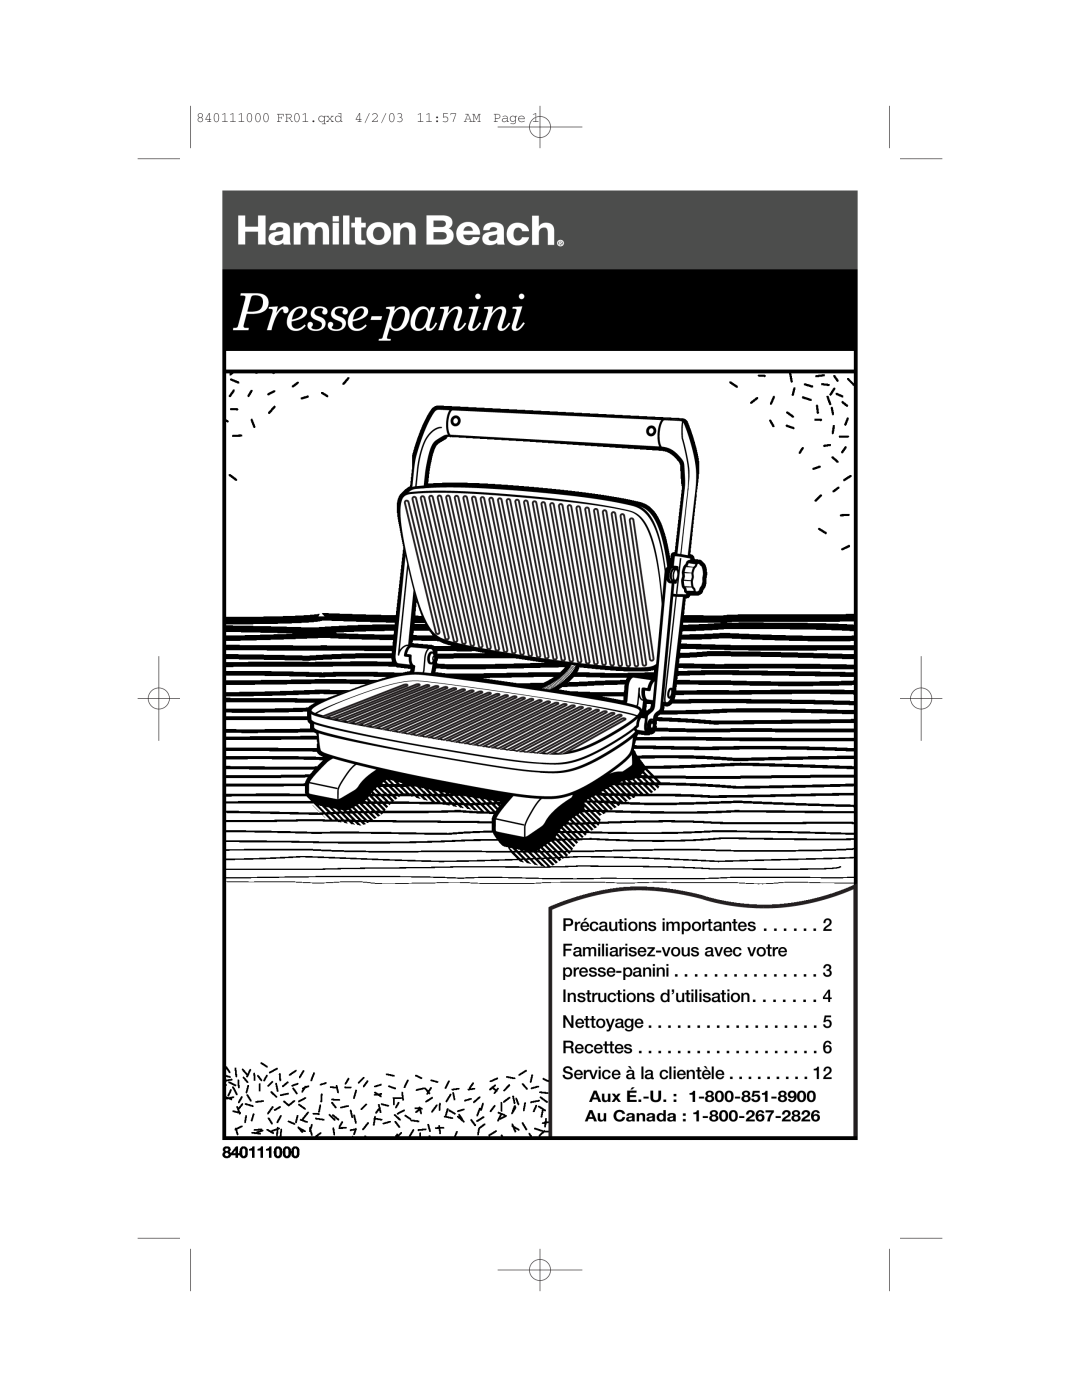 Hamilton Beach 25450 Presse-panini, Précautions importantes, Familiarisez-vousavec votre, Instructions d’utilisation 